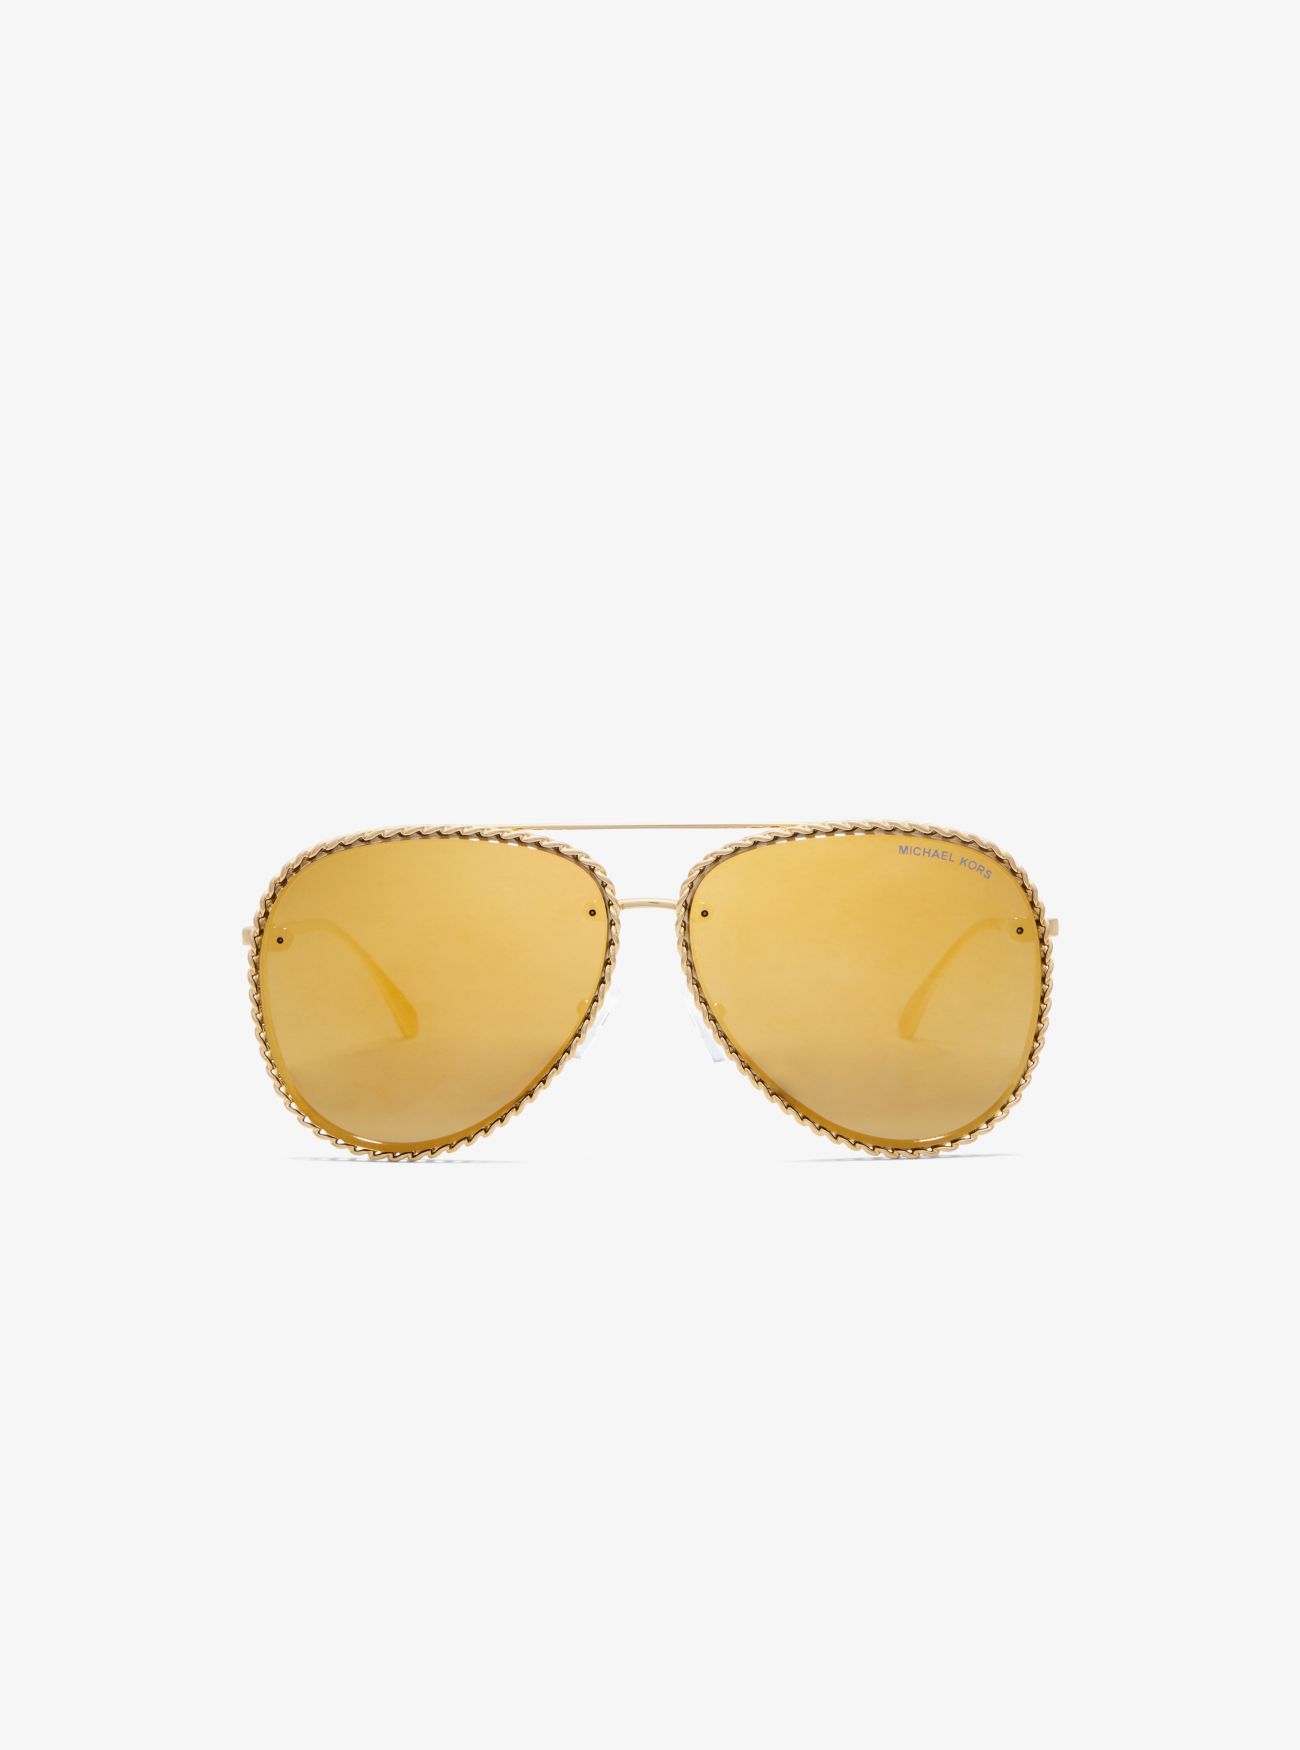 MK Portofino Sunglasses - Gold - Michael Kors